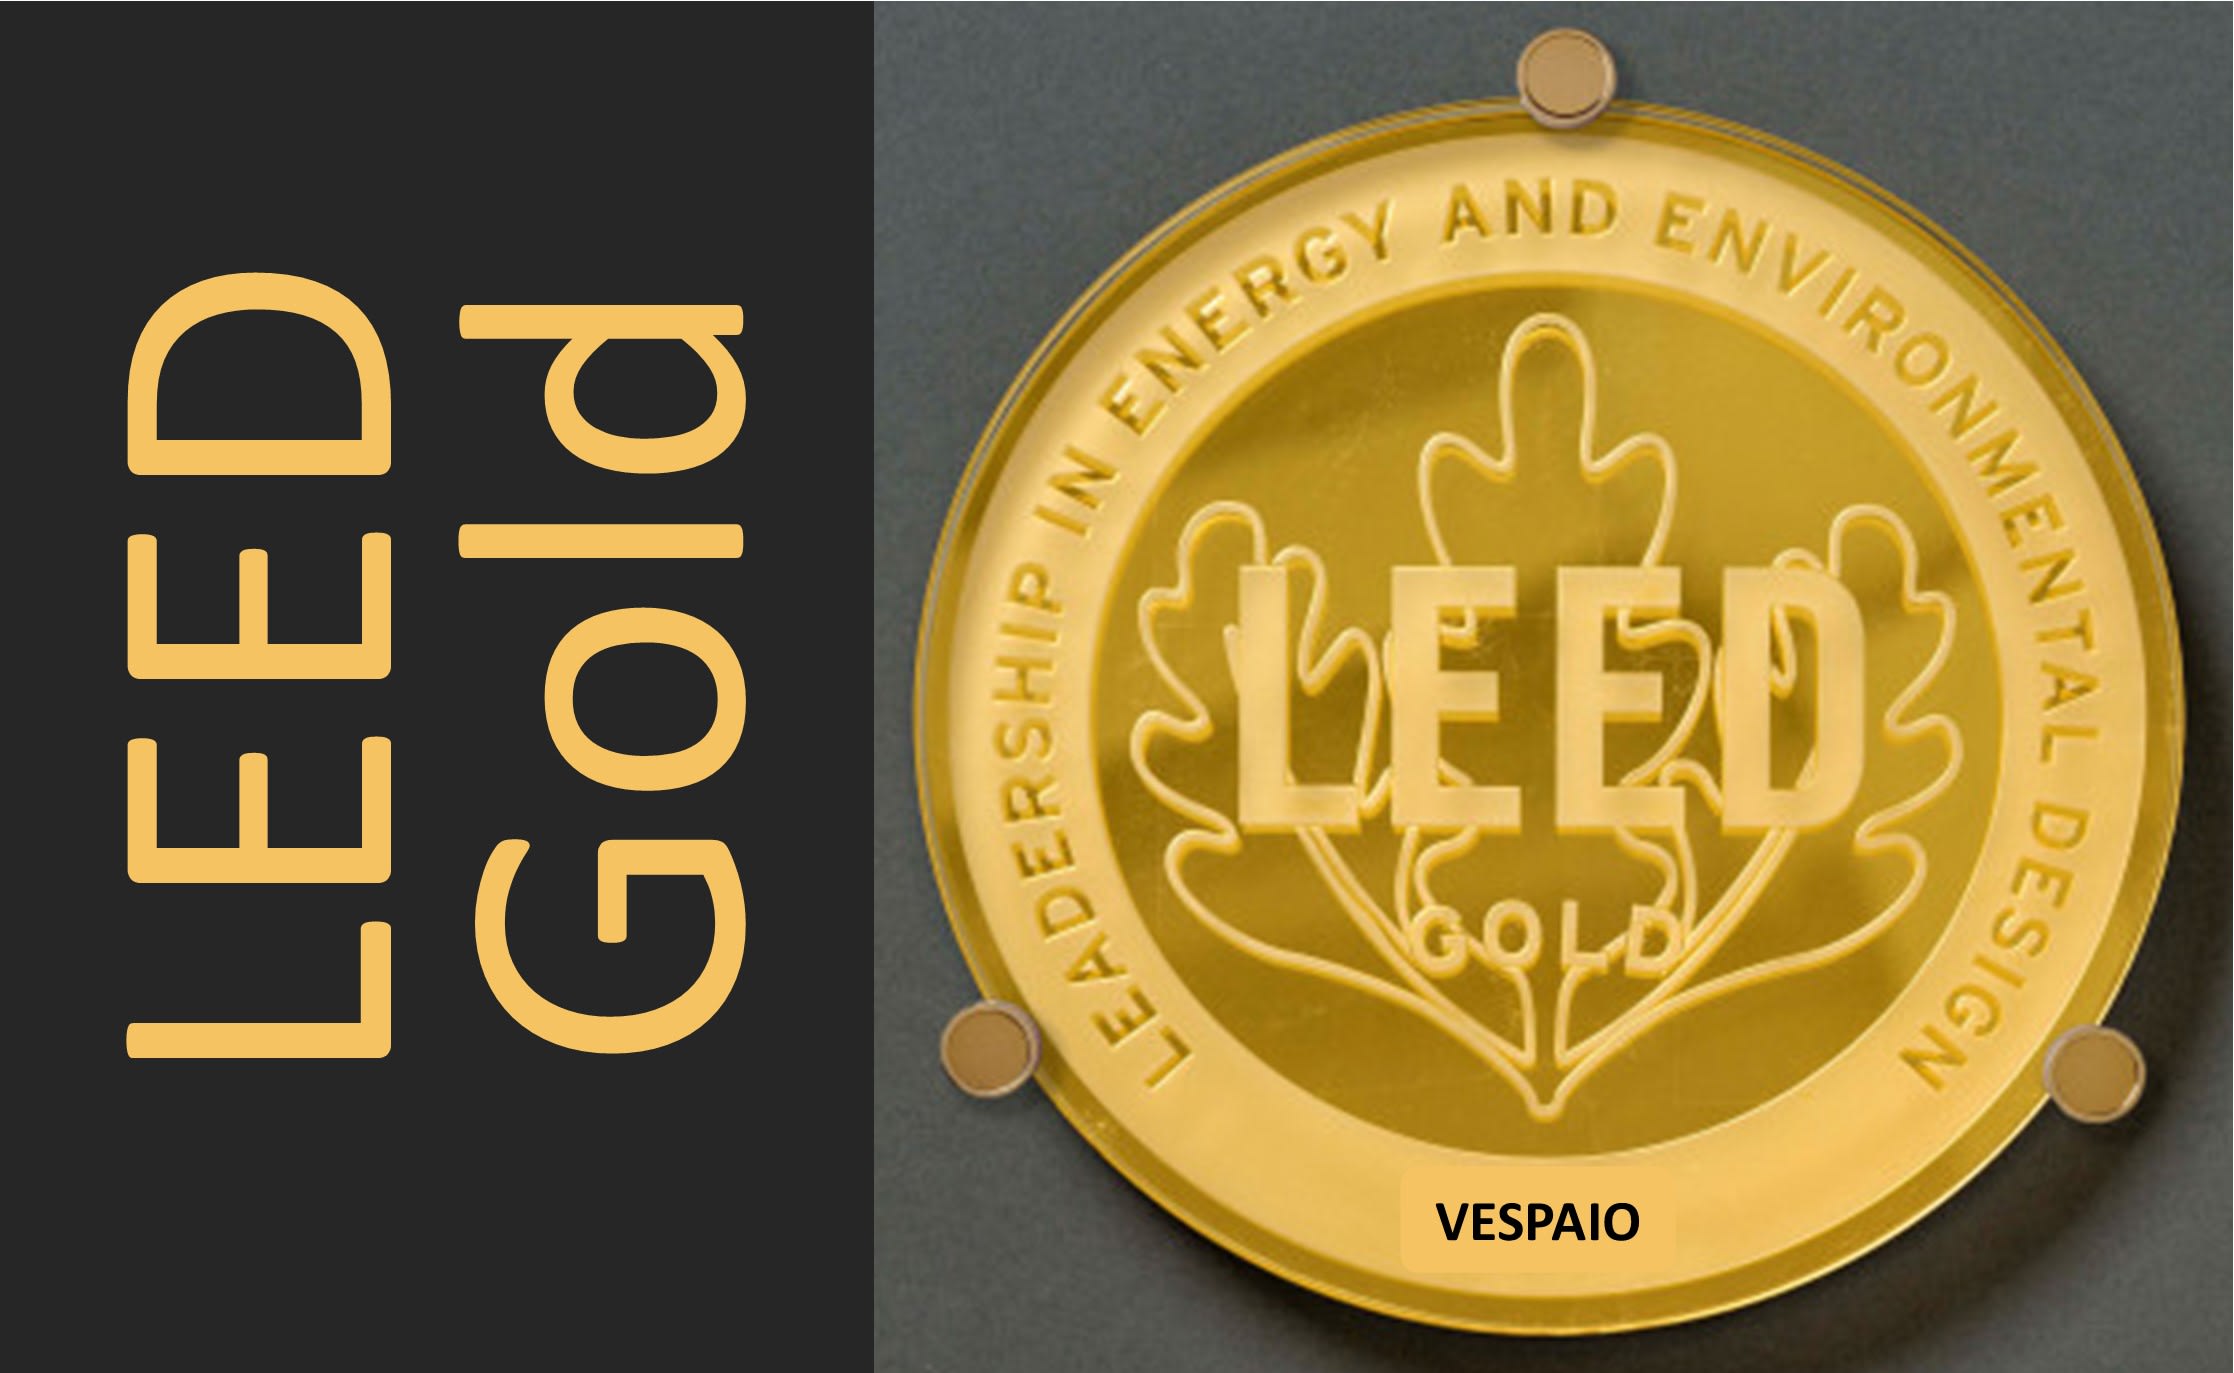 Leed Gold Award